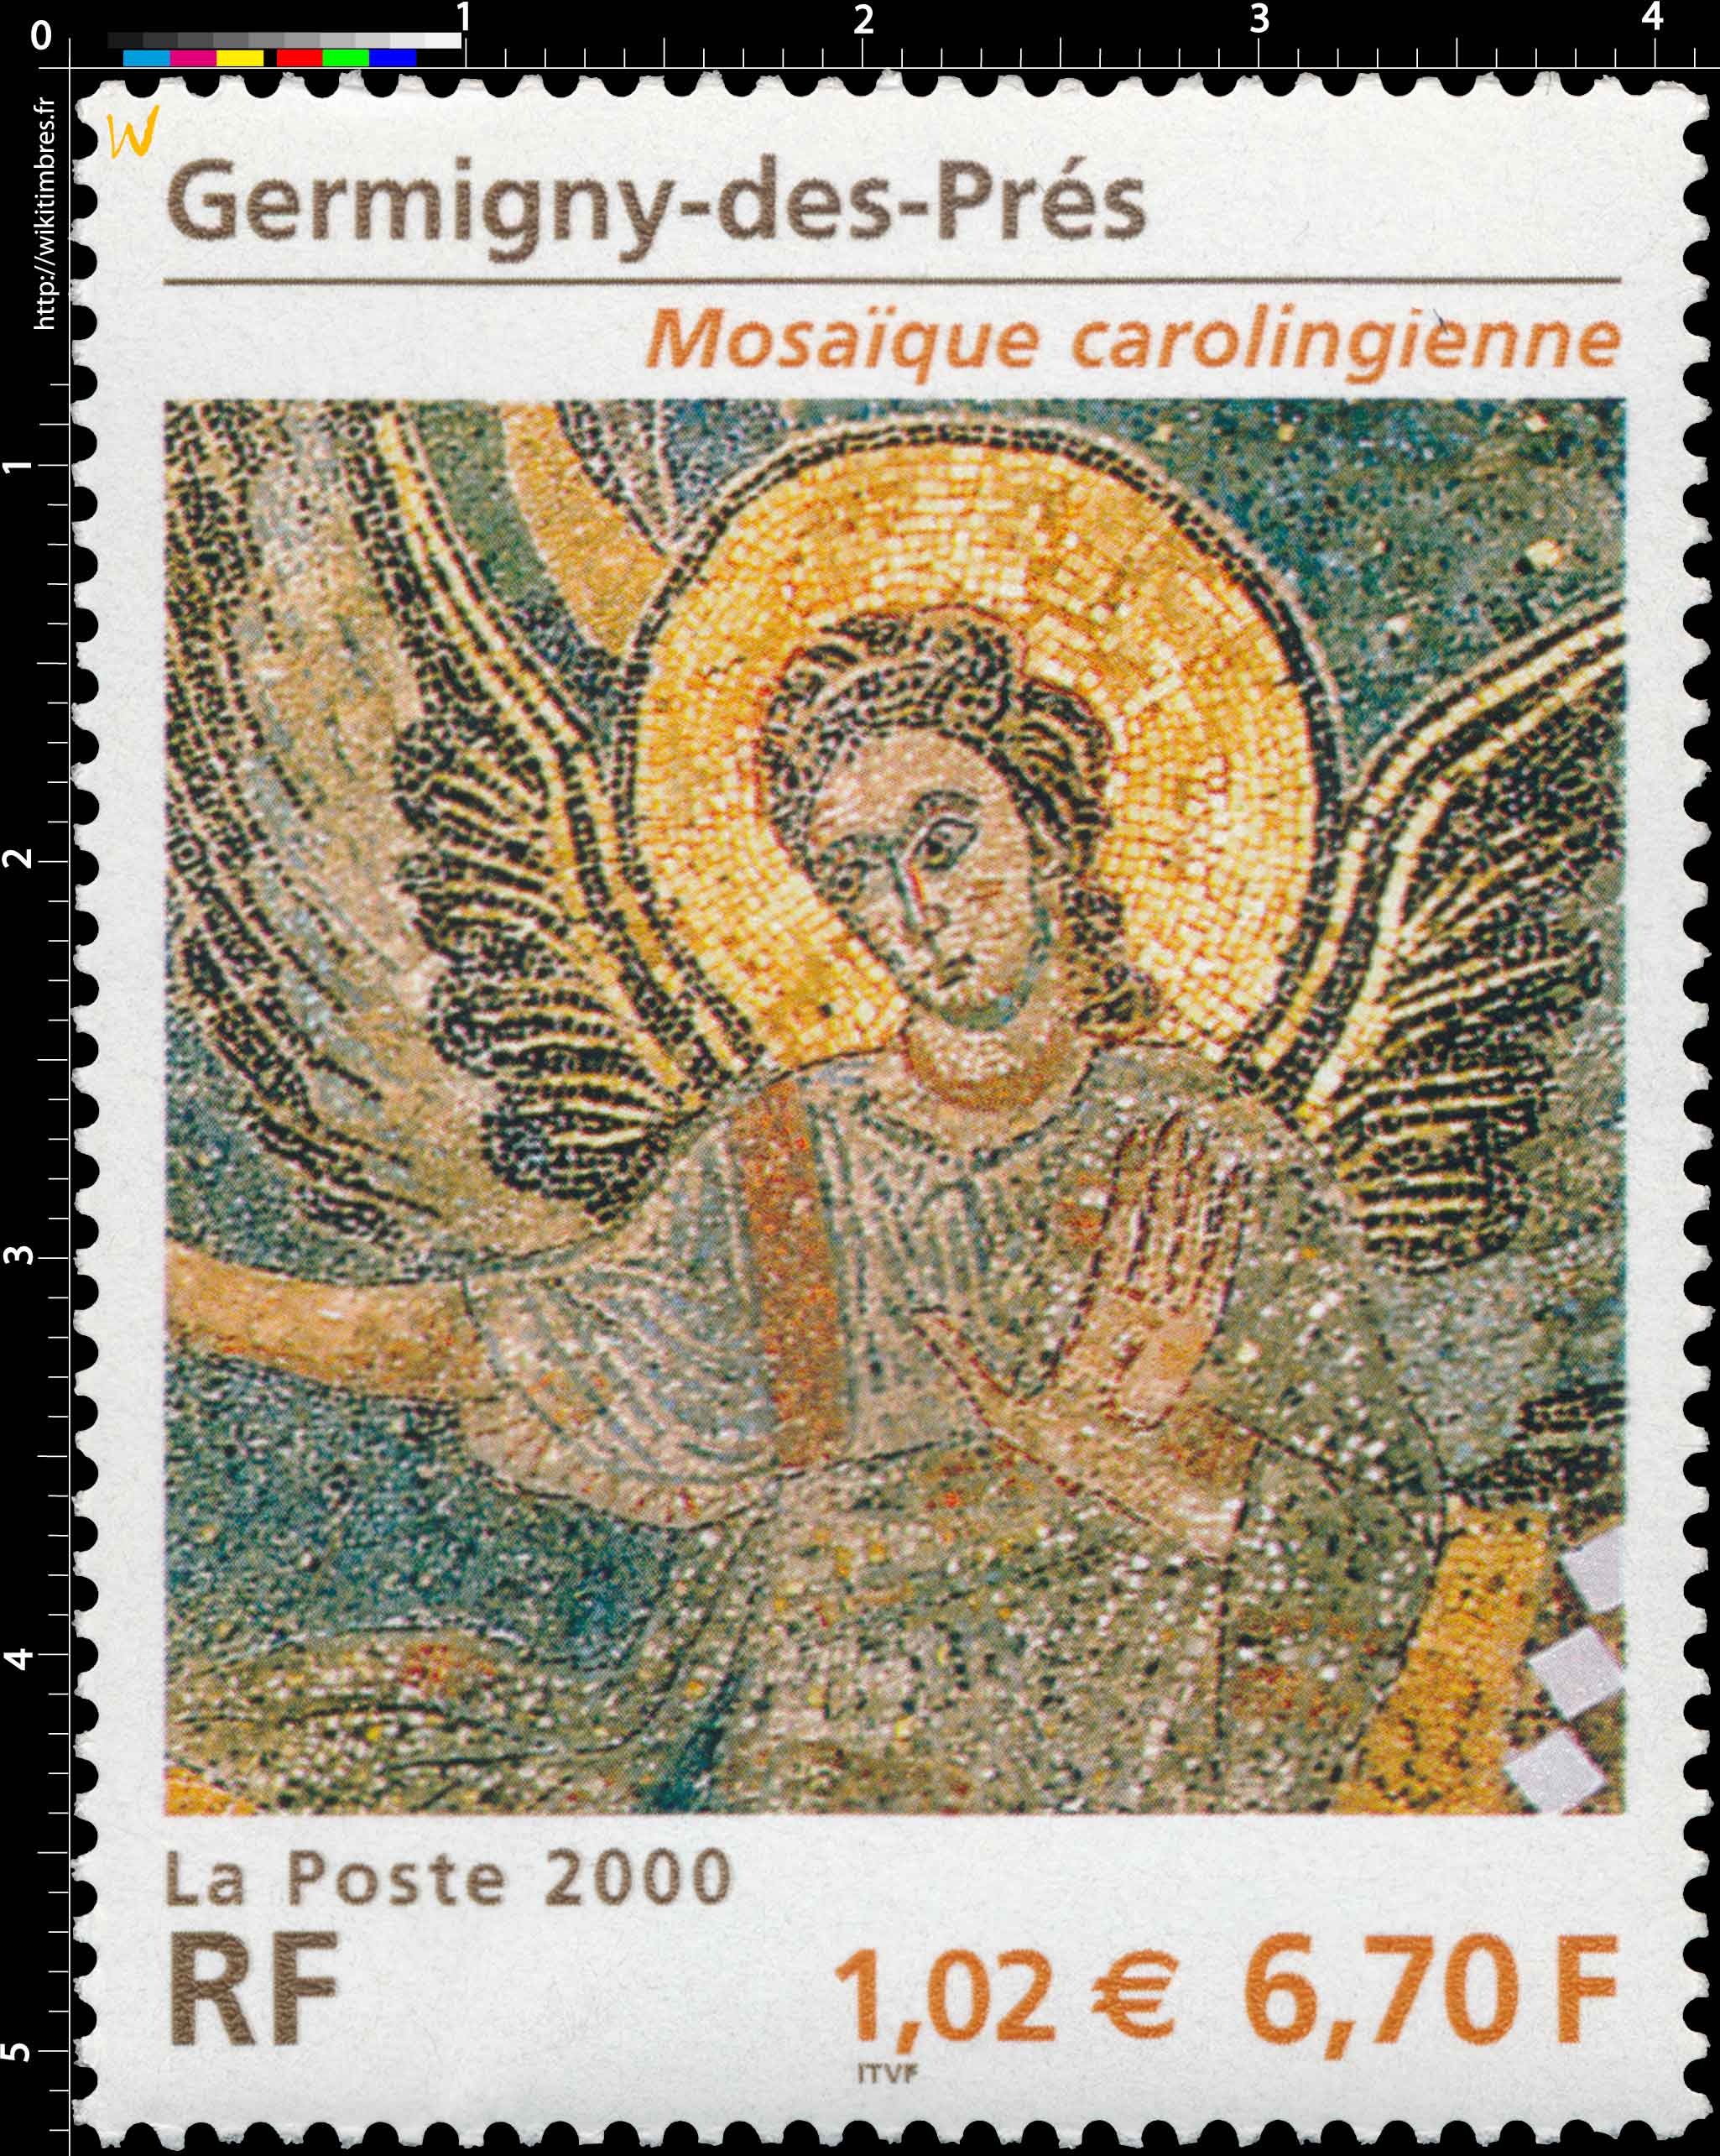 2000 Germigny-des-Prés Mosaïque carolingienne